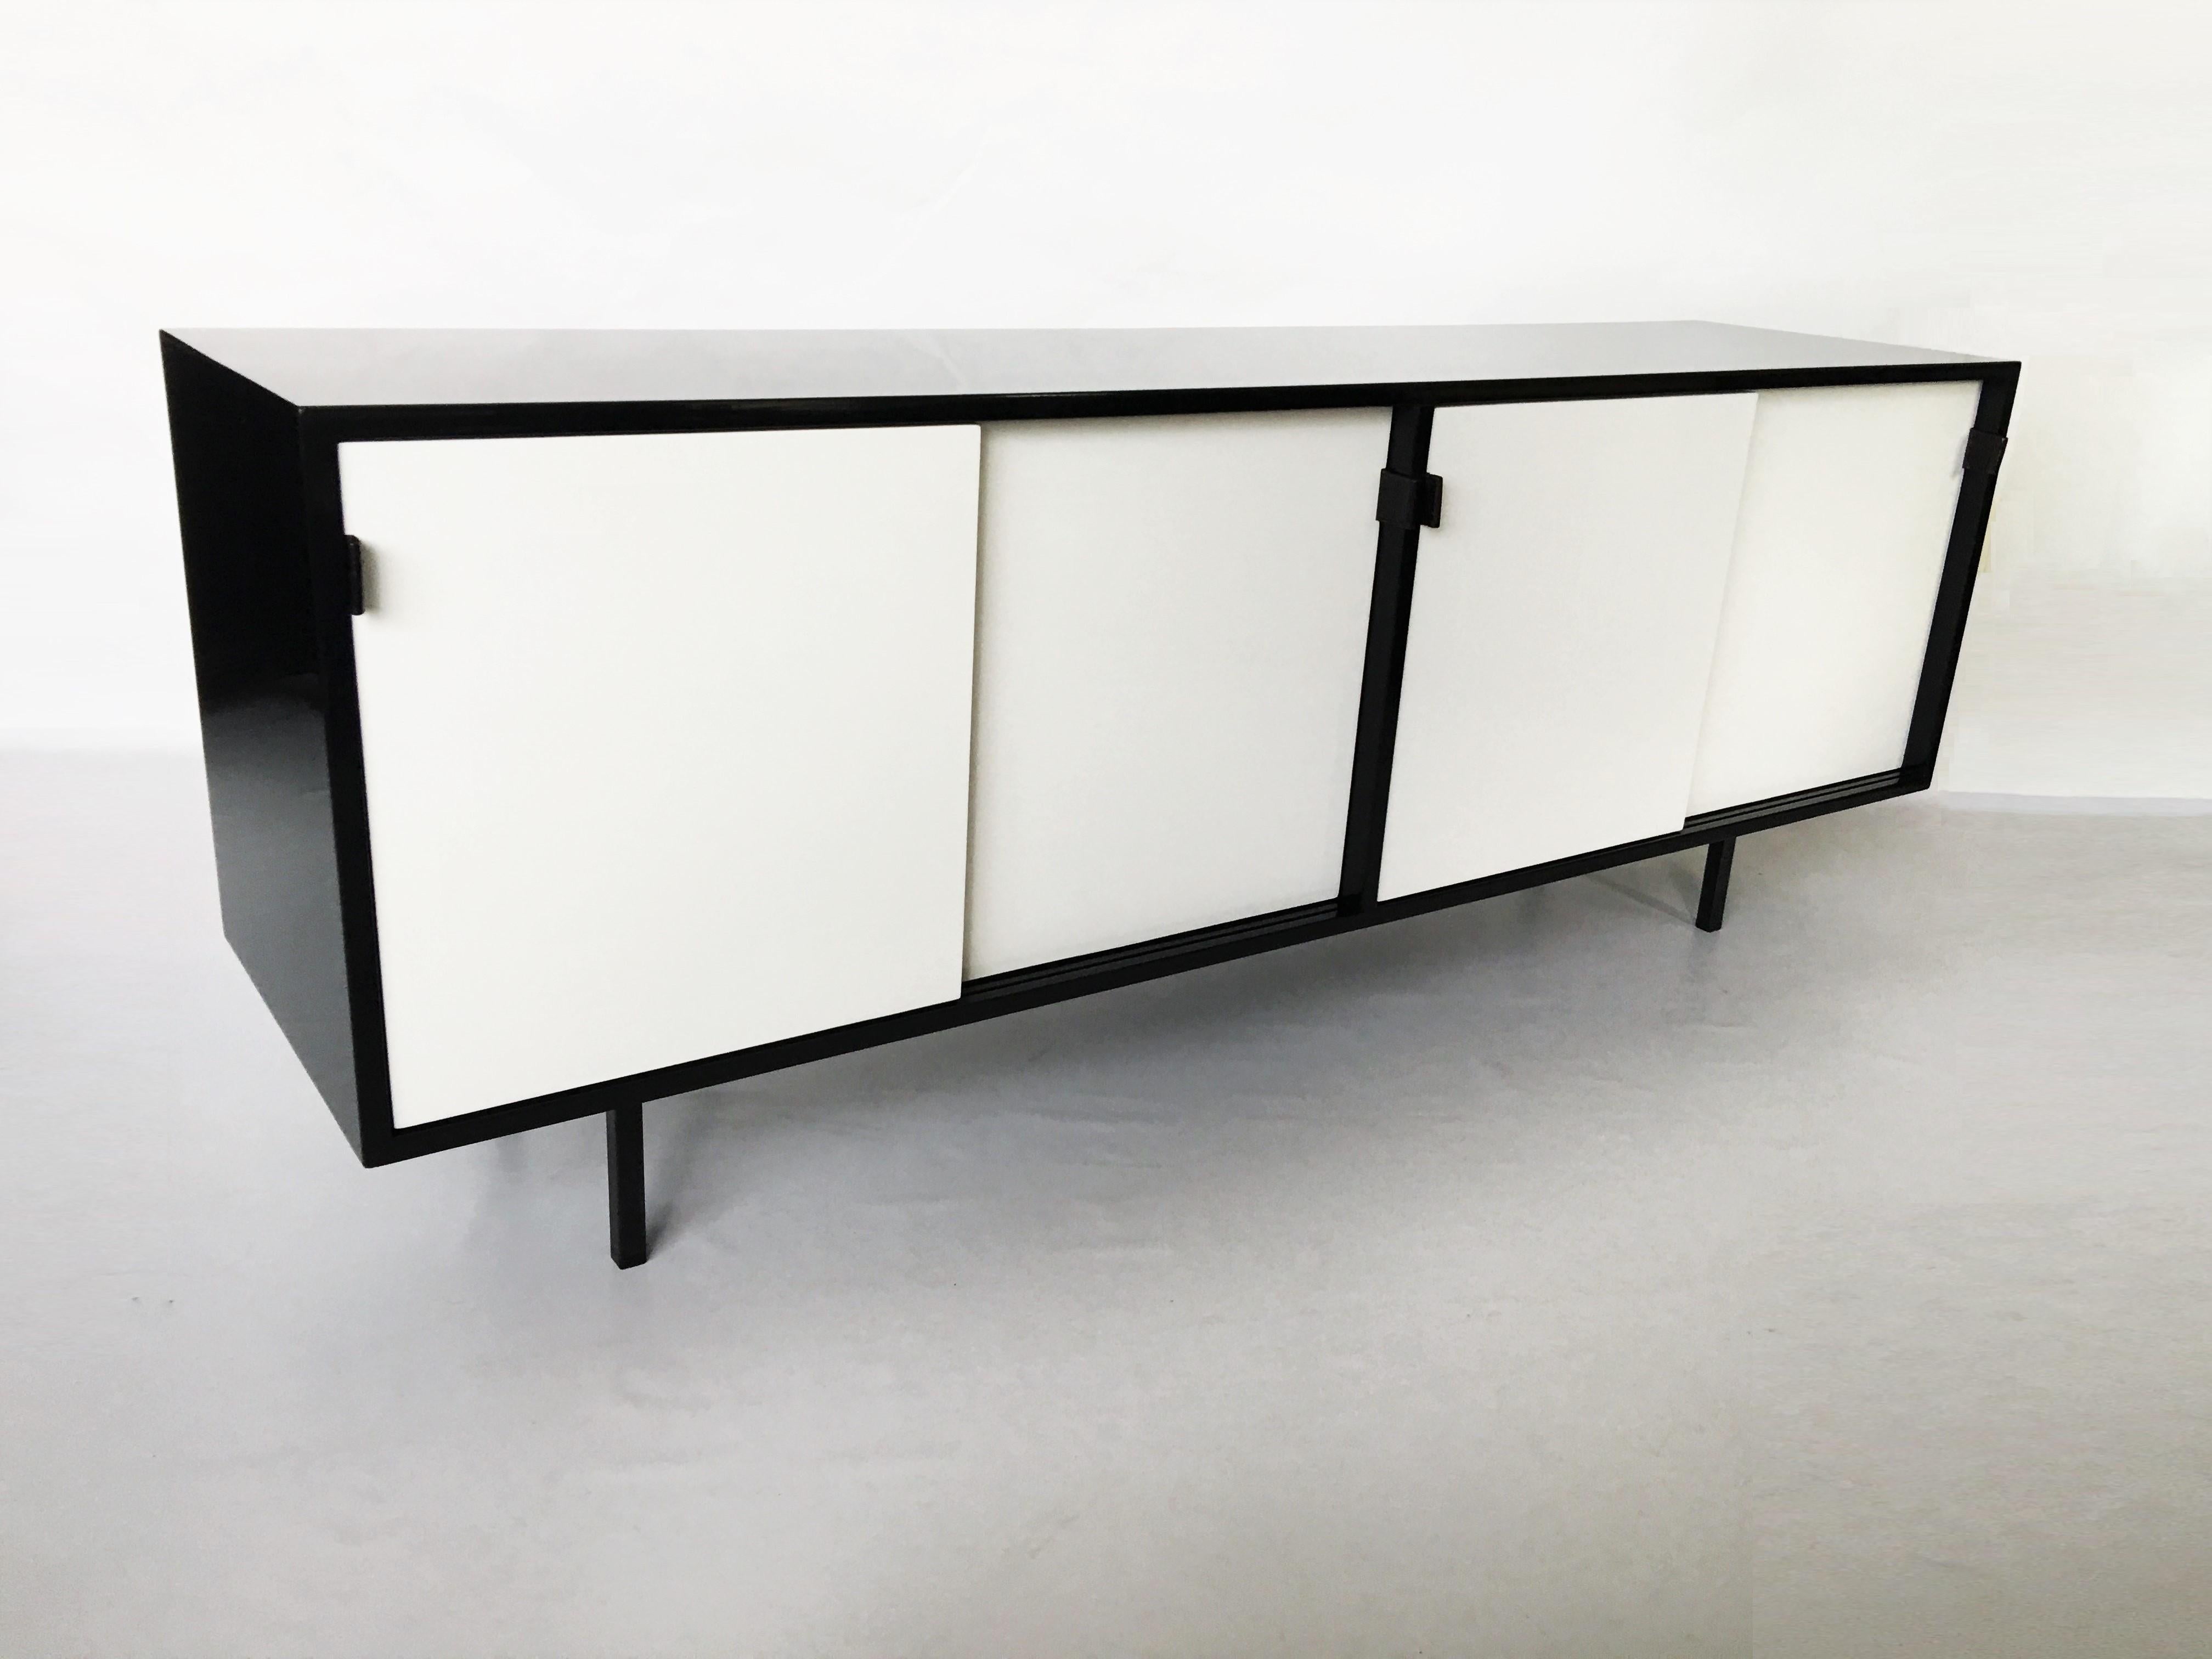 Eine moderne Variante des Klassikers ist dieses auffällige, schwarz-weiß lackierte Sideboard/Credenza, das von der Architektin und Designerin Florence Knoll entworfen und von Knoll associates inc. um 1950 hergestellt wurde. Der Schrank verfügt über